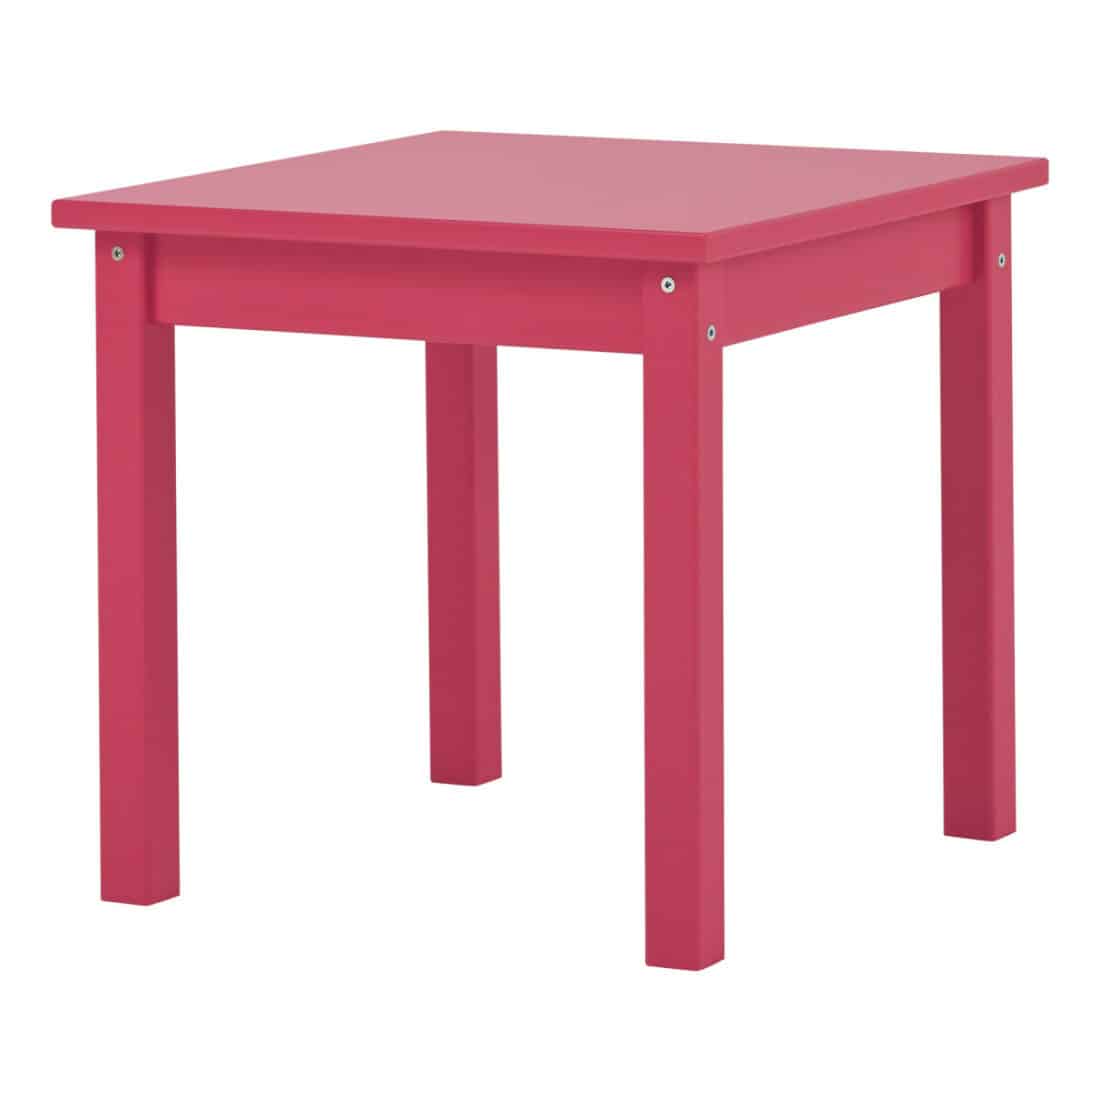 Pinkki pöytä lapselle Hoppekids-merkiltä.